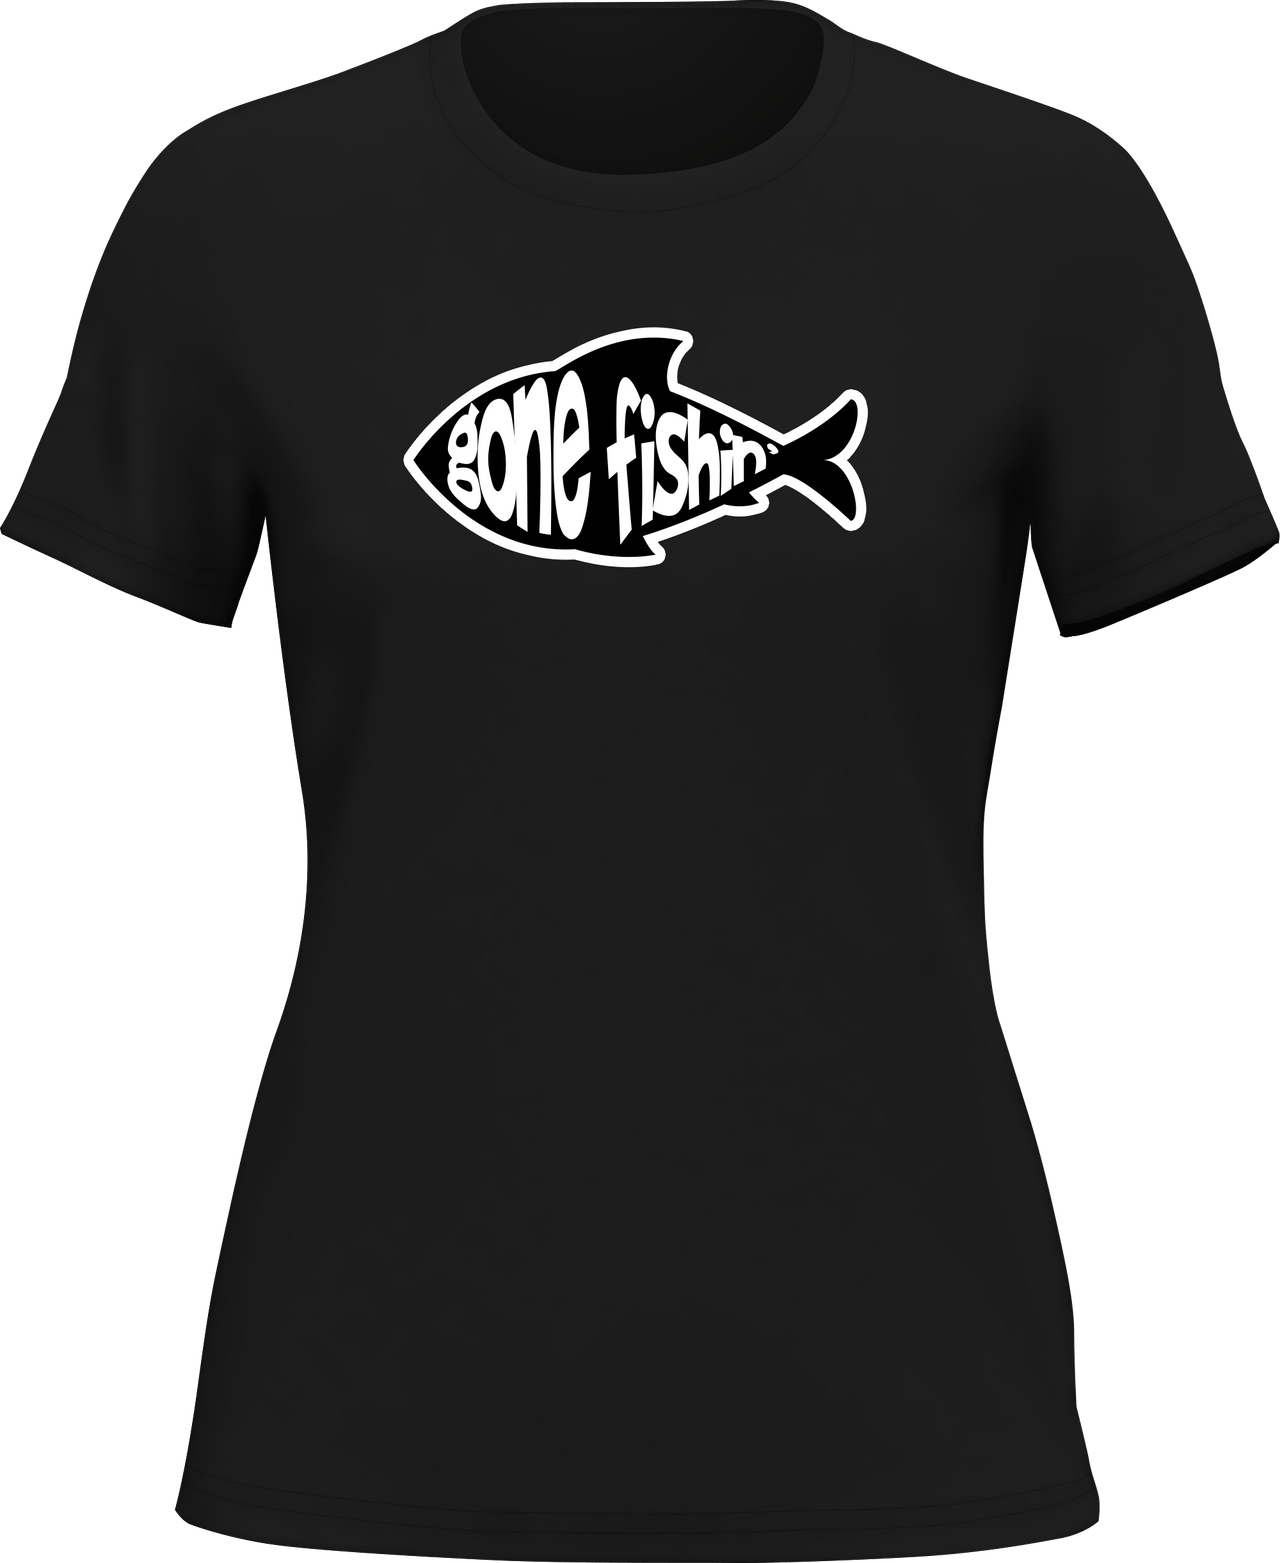 Gone Fishing v3 T-Shirt for Women